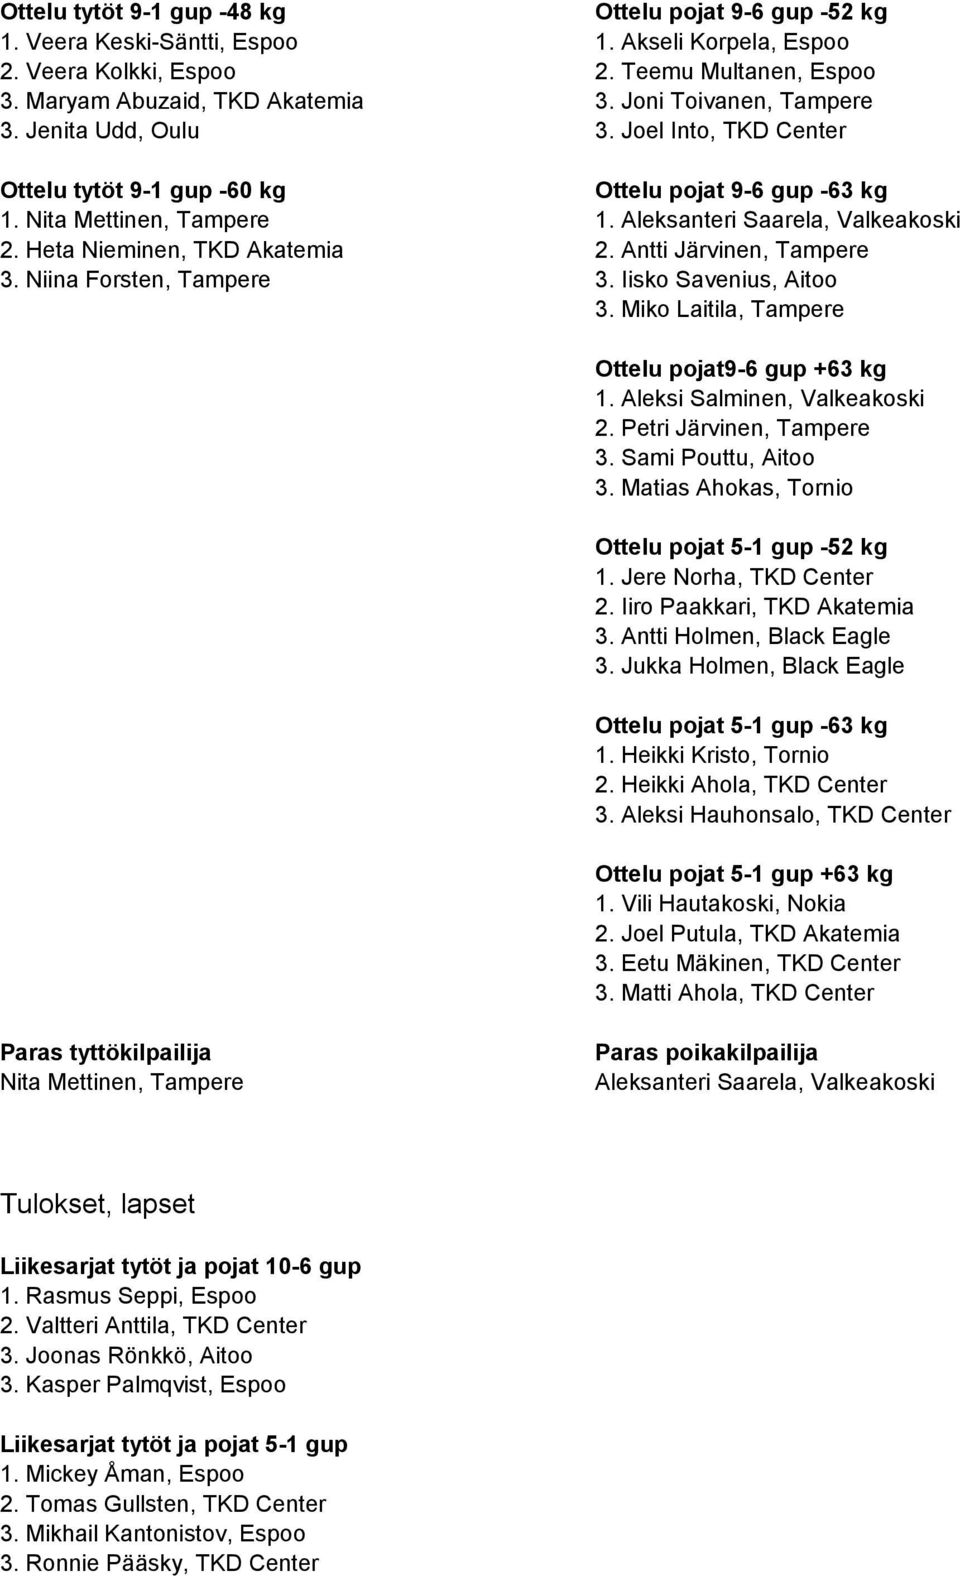 Heta Nieminen, TKD Akatemia 2. Antti Järvinen, Tampere 3. Niina Forsten, Tampere 3. Iisko Savenius, Aitoo 3. Miko Laitila, Tampere Ottelu pojat9-6 gup +63 kg 1. Aleksi Salminen, Valkeakoski 2.